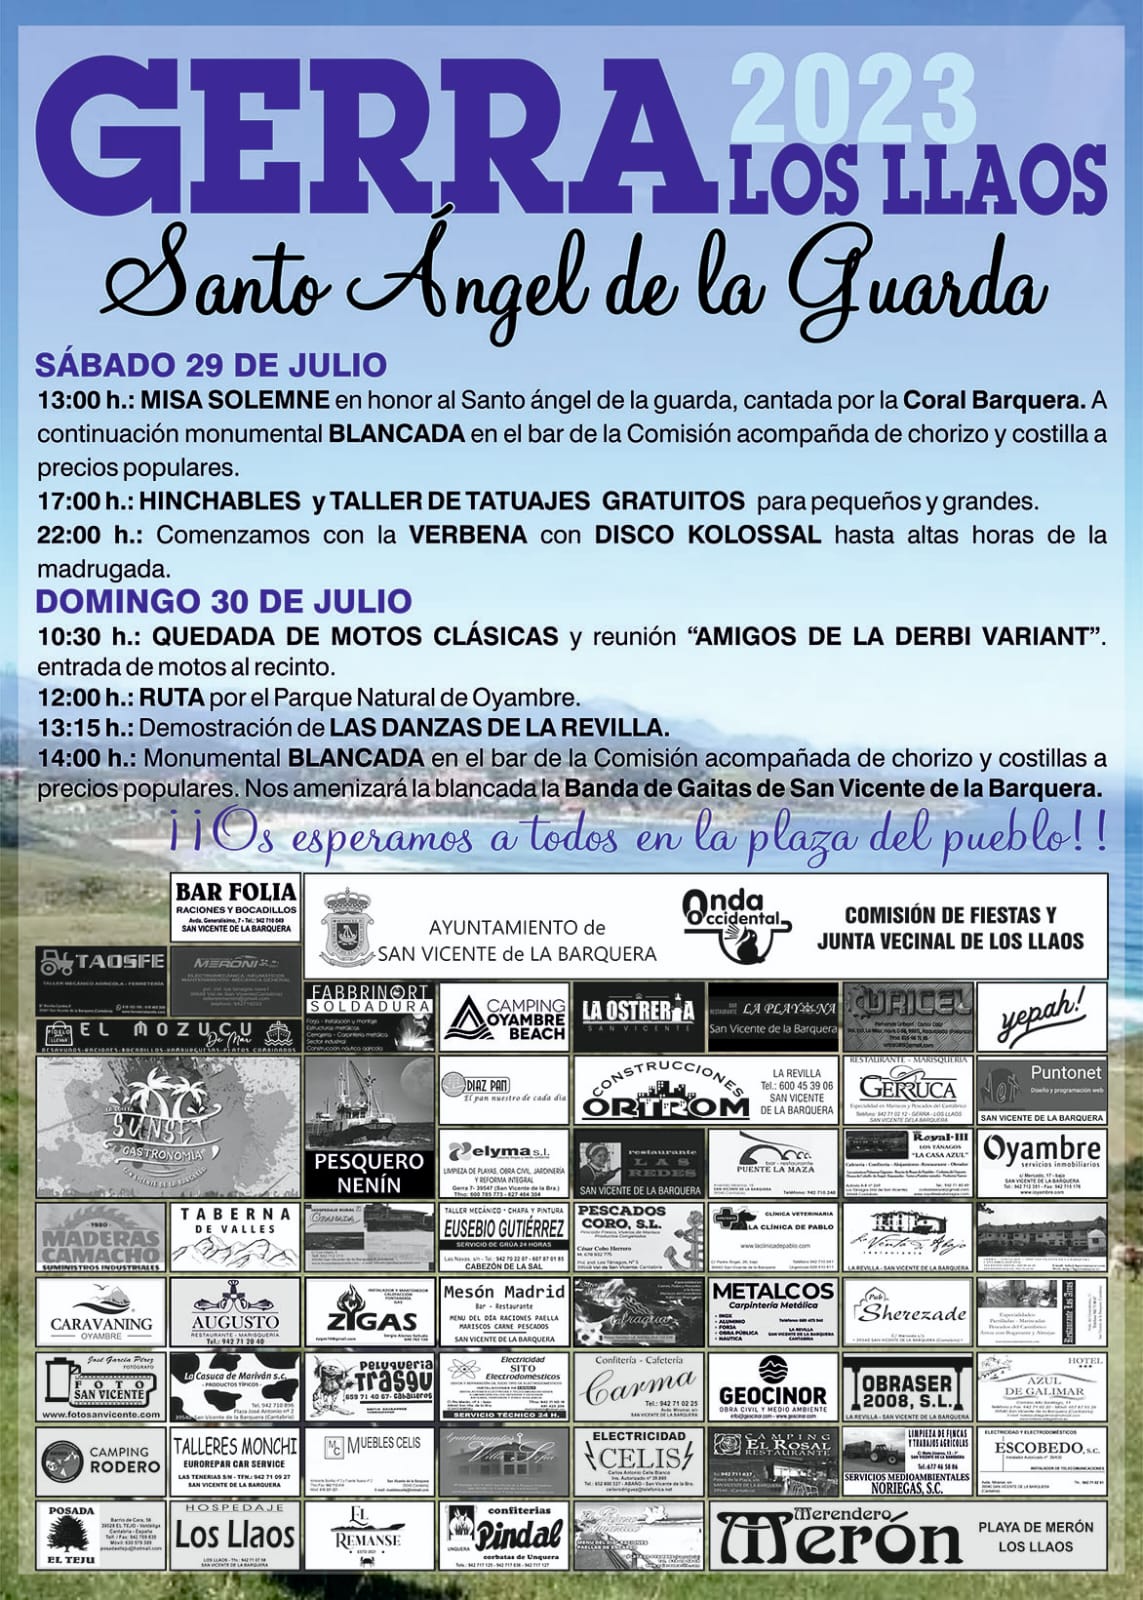 Fiestas de Gerra 2023 – Los Llaos – Santo Ángel de la Guarda